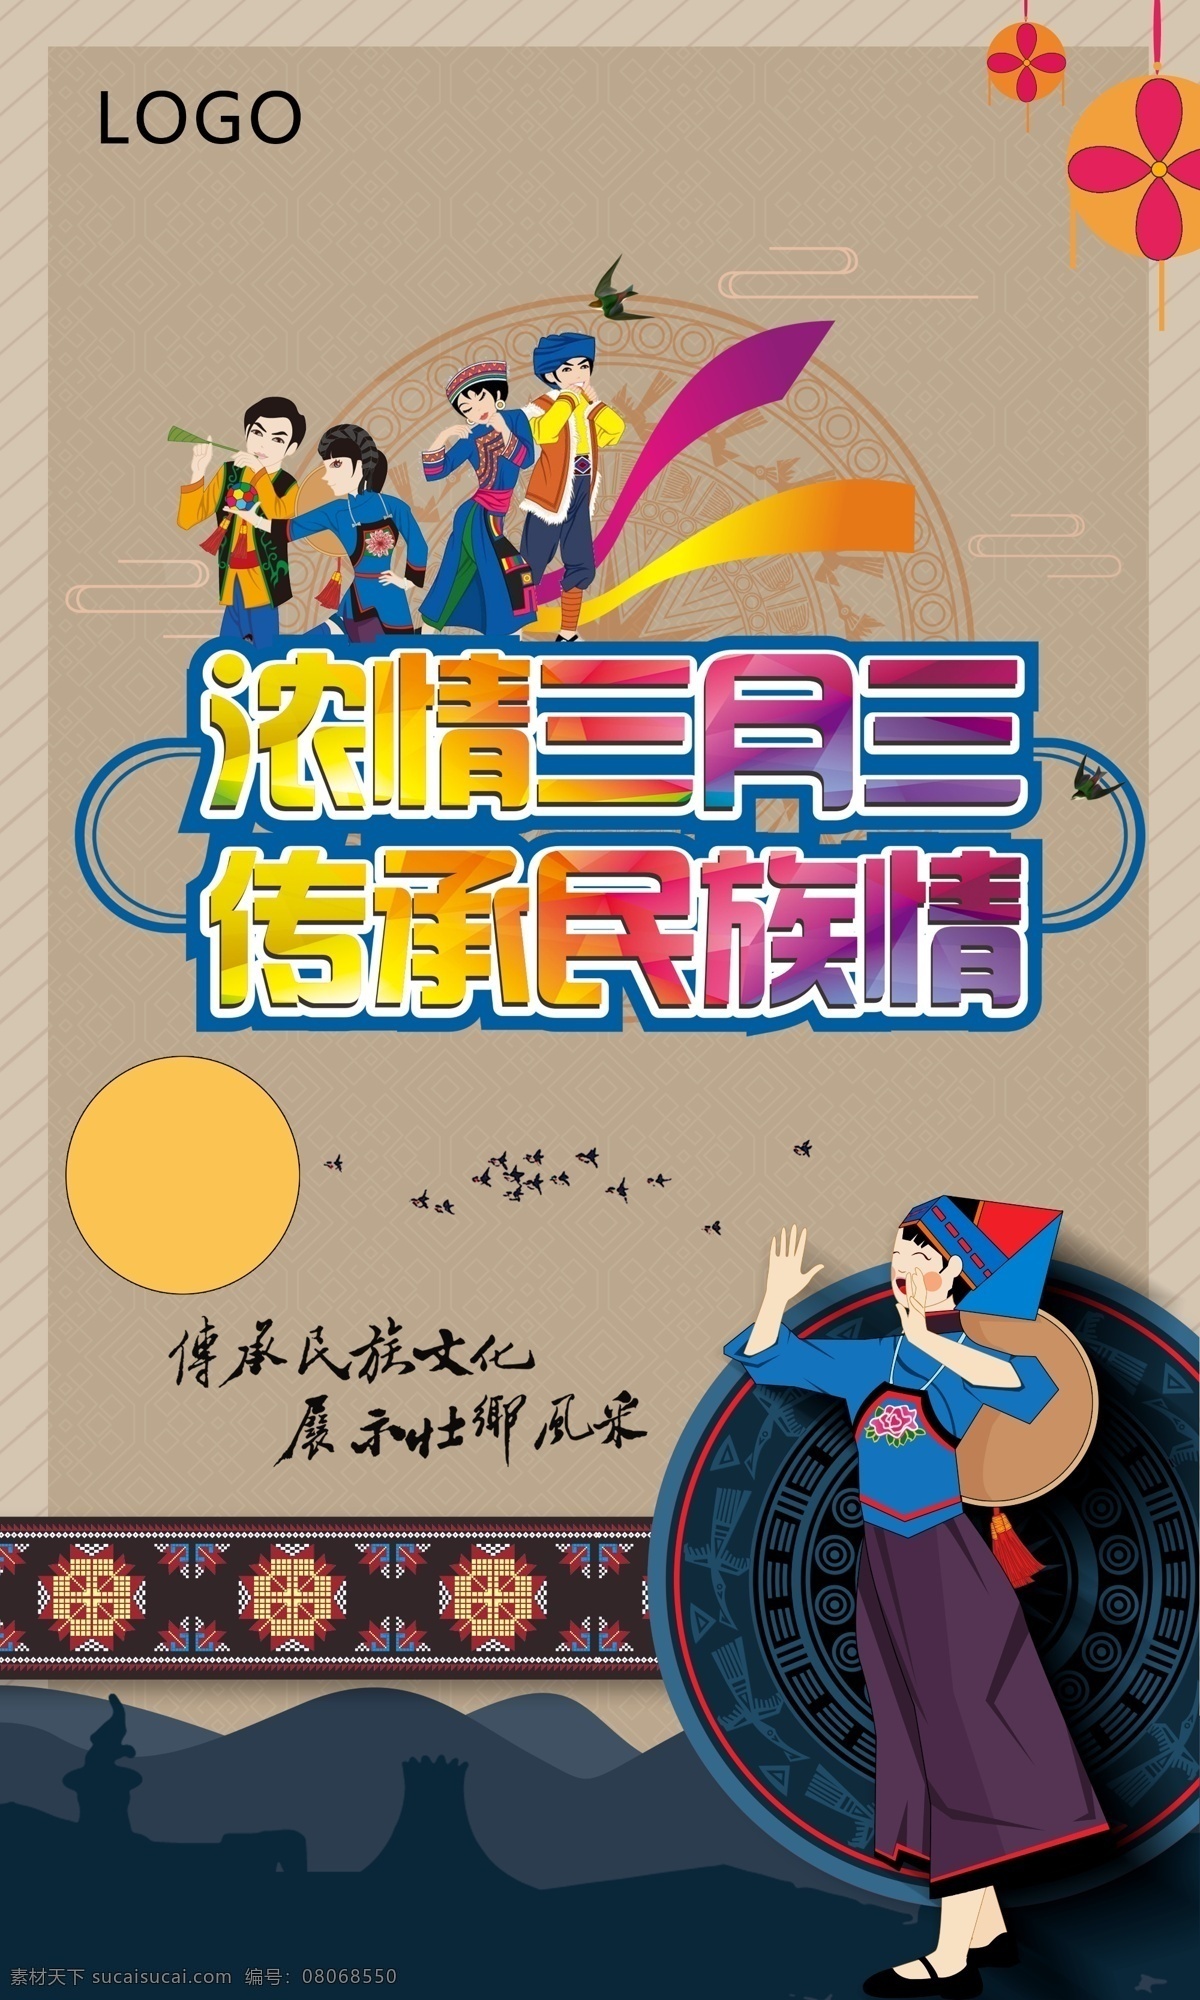 歌圩 民族节 传统民族节 三月三节 海报